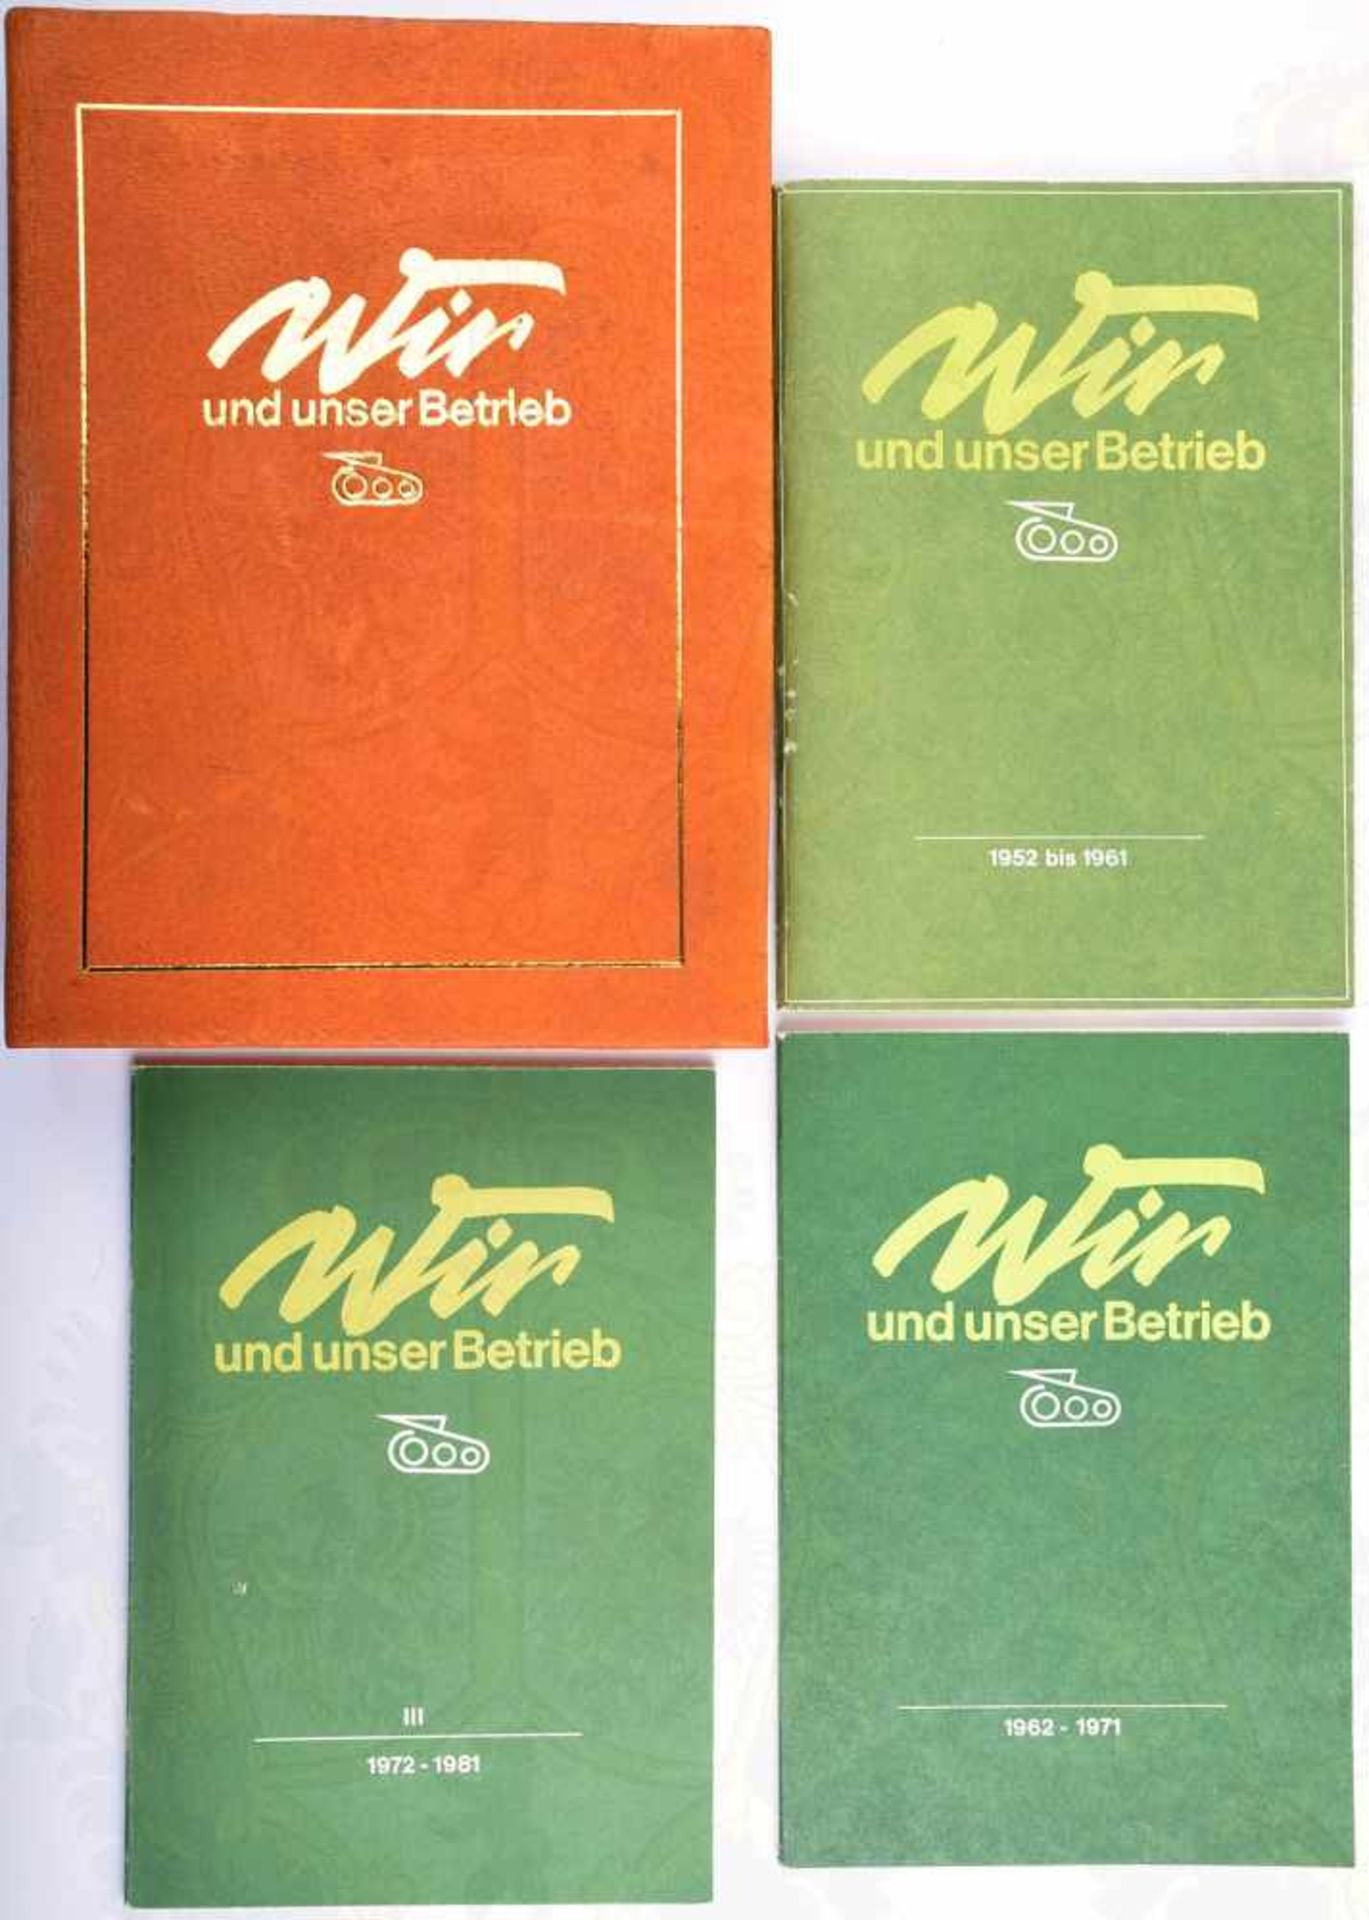 BETRIEBSCHRONIK VEB REPARATURWERK NEUBRANDENBURG, „Wir und unser Betrieb“, 1982, 3 Broschüren f. die